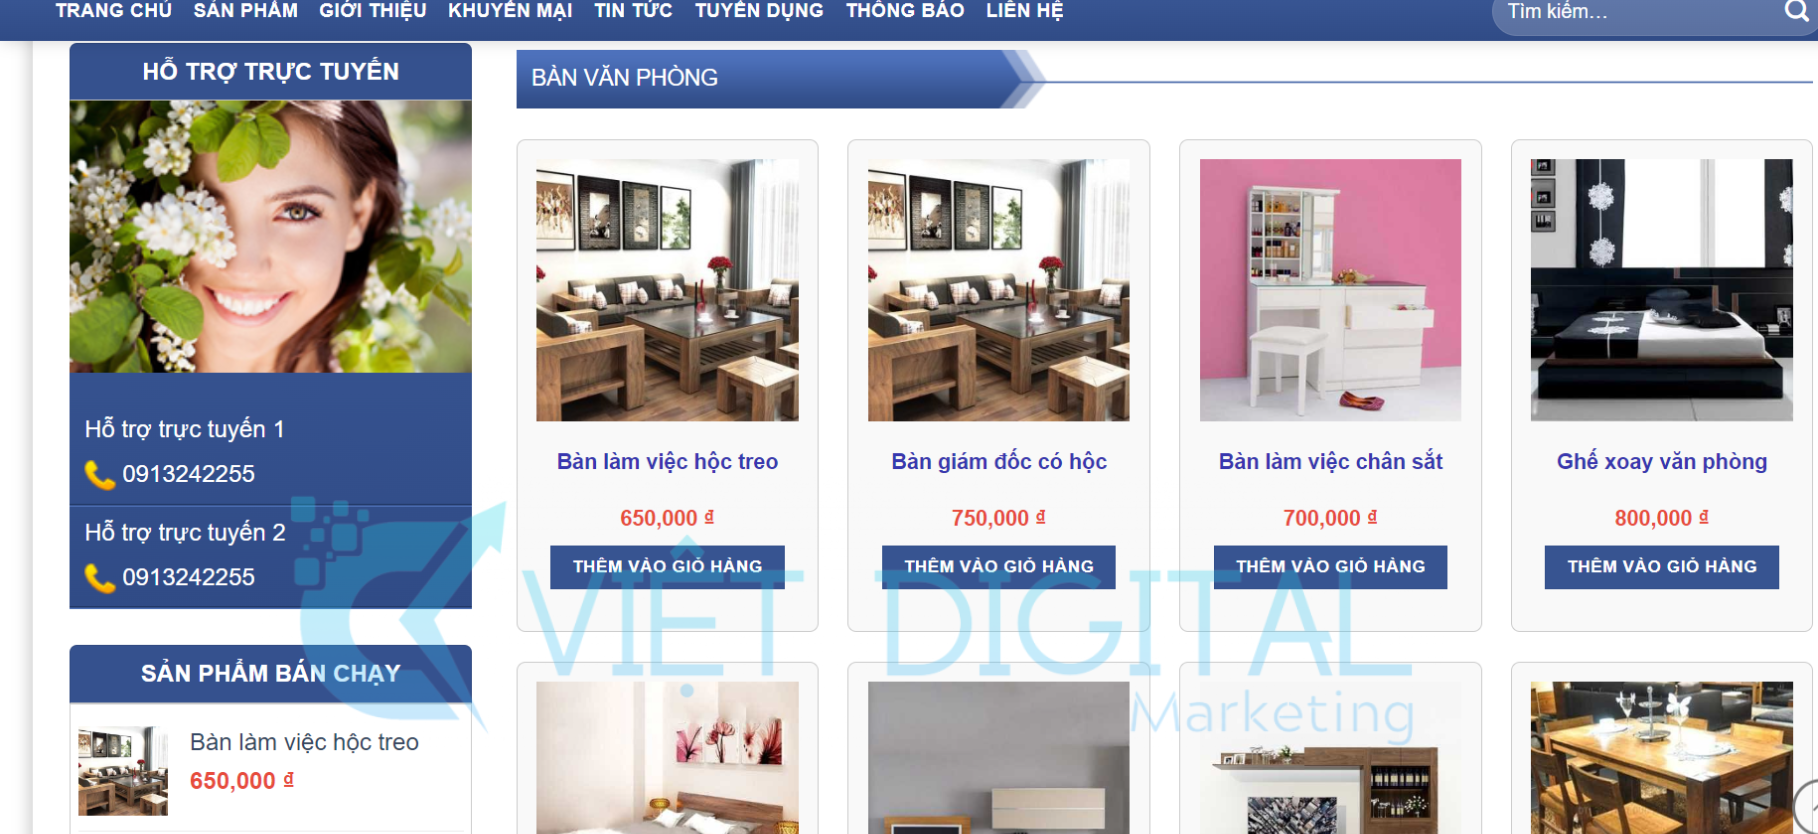 Dịch vụ thiết kế website nội thất chuyên nghiệp Việt Digital